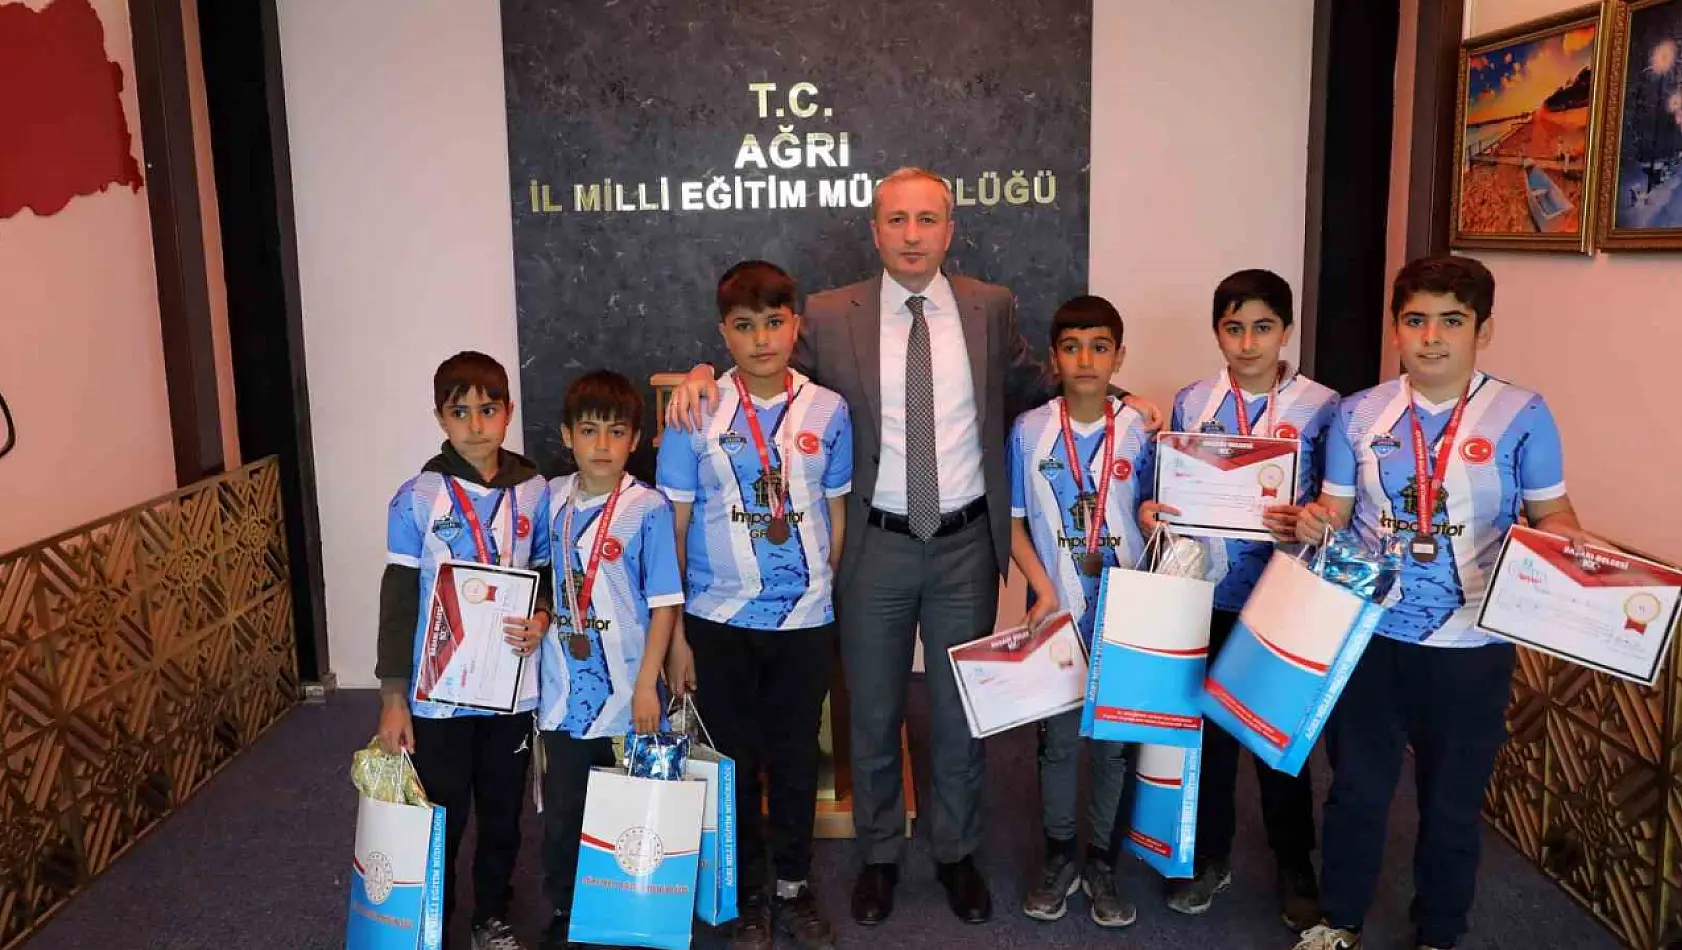 Ağrı Milli Eğitim Müdürü Hasan Kökrek, başarılı öğrencileri tebrik etti